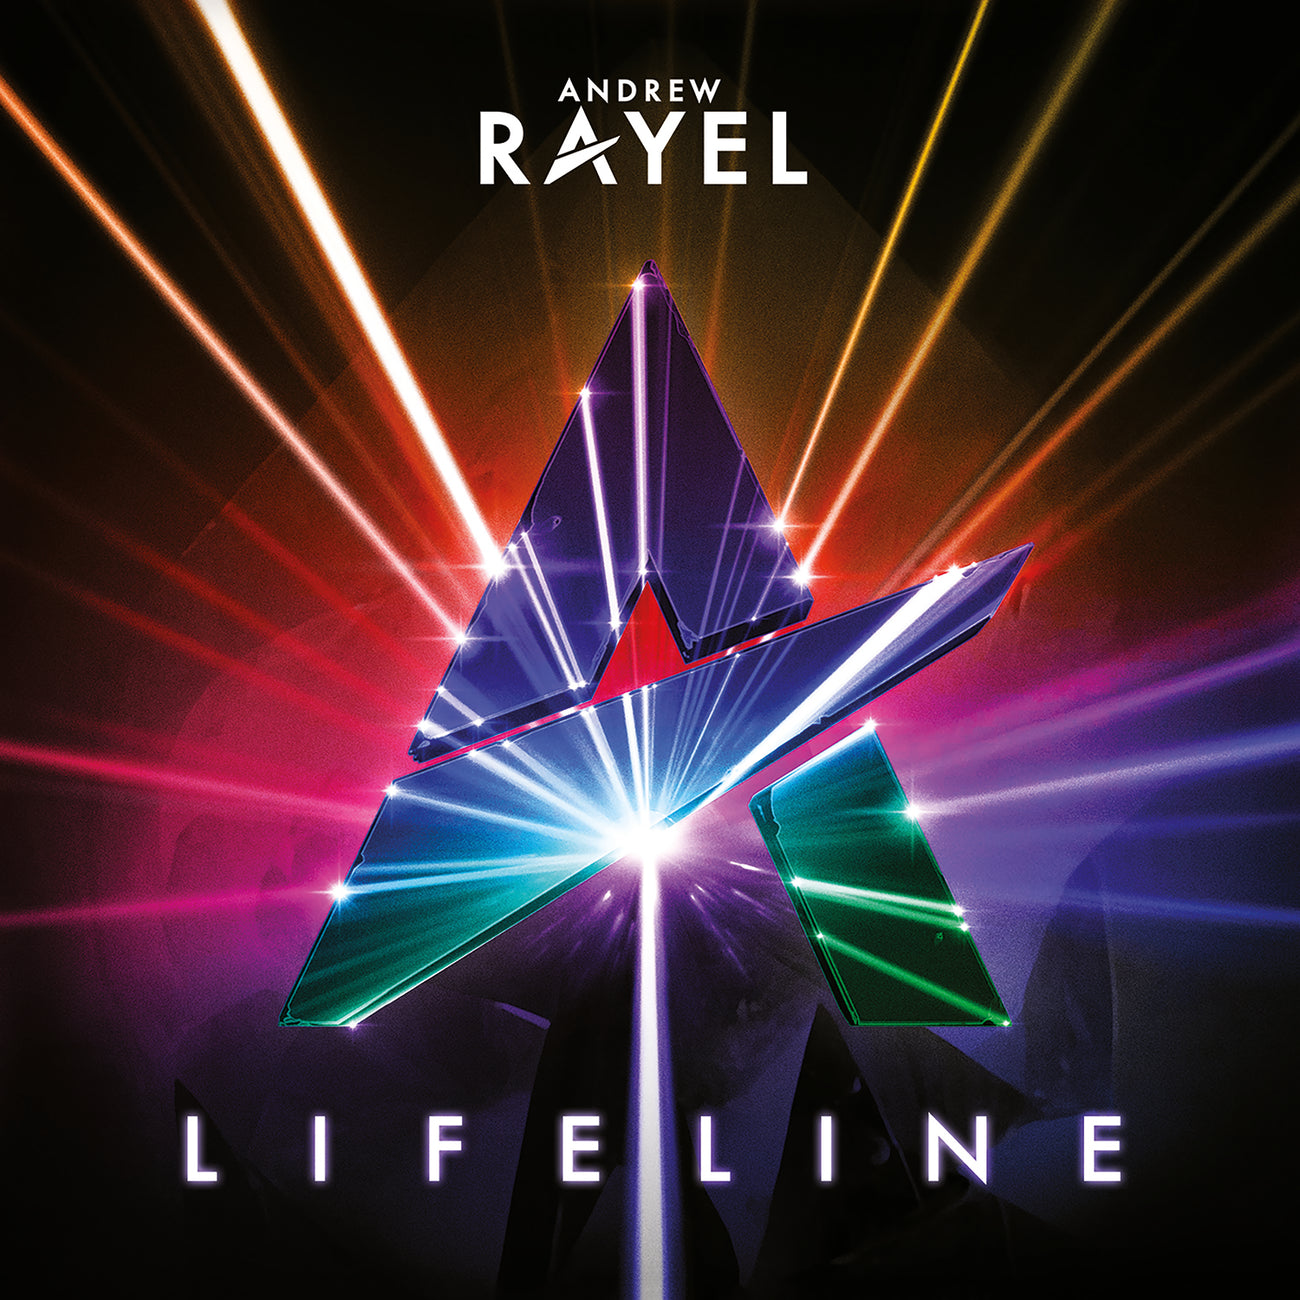 Andrew Rayel - Lifeline (Vinyl)